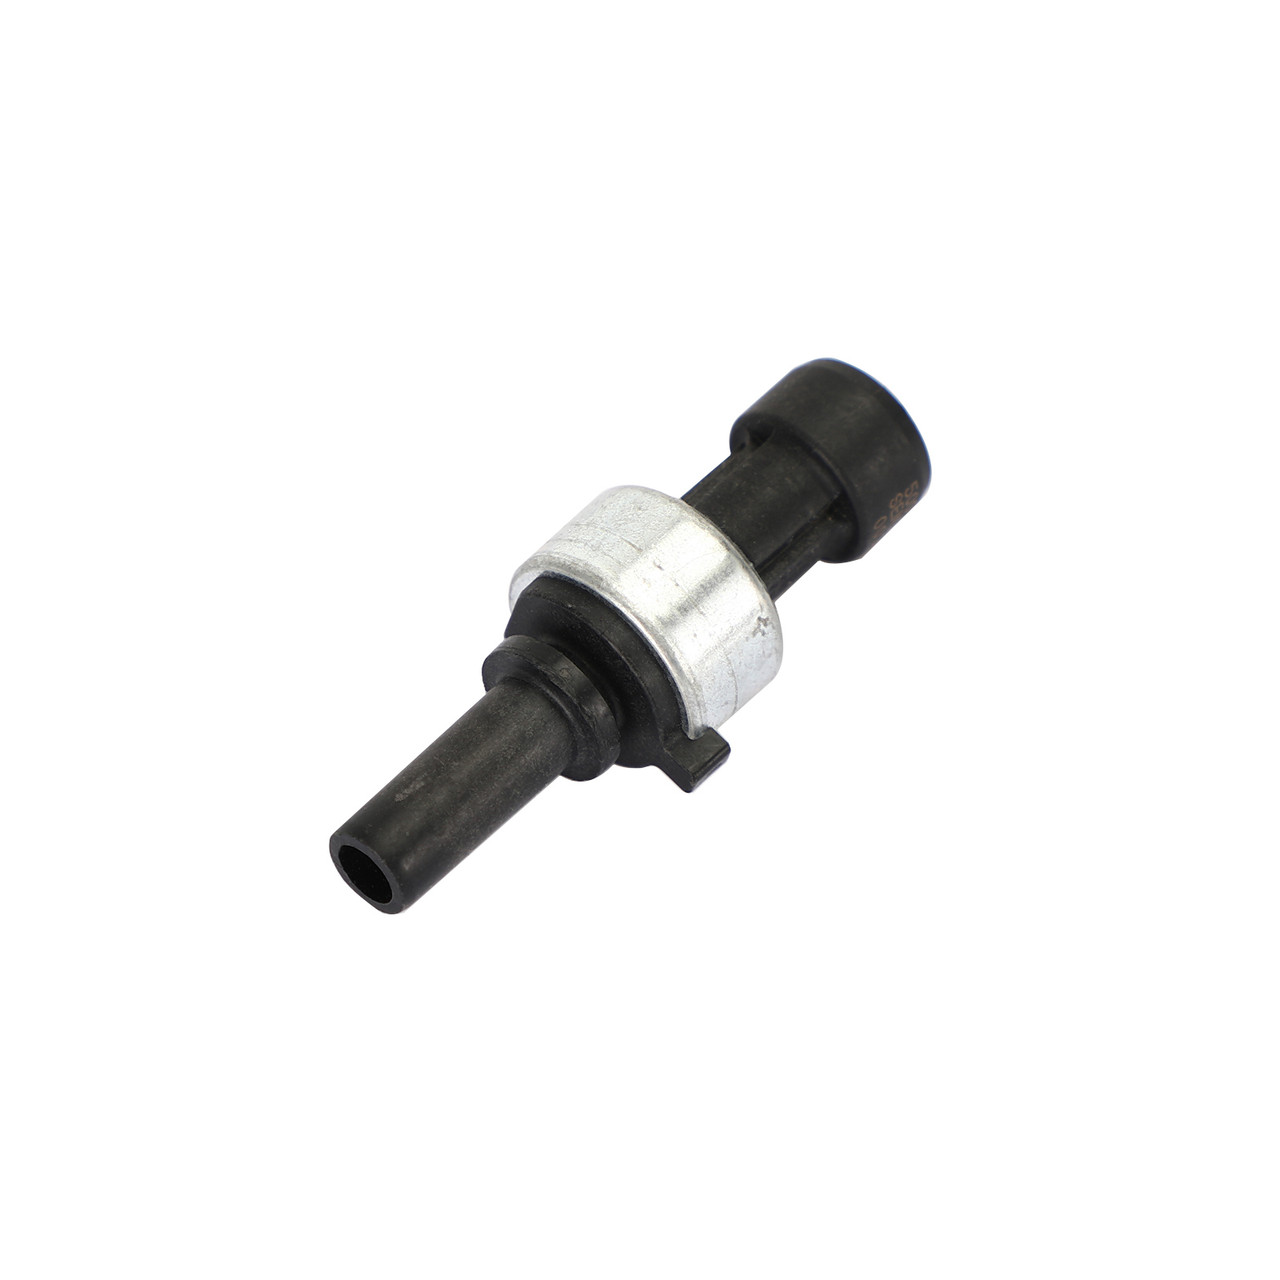 Low Air Pressure Sensor 5005758 Fit for Navistar International 2505669C91 Bendix